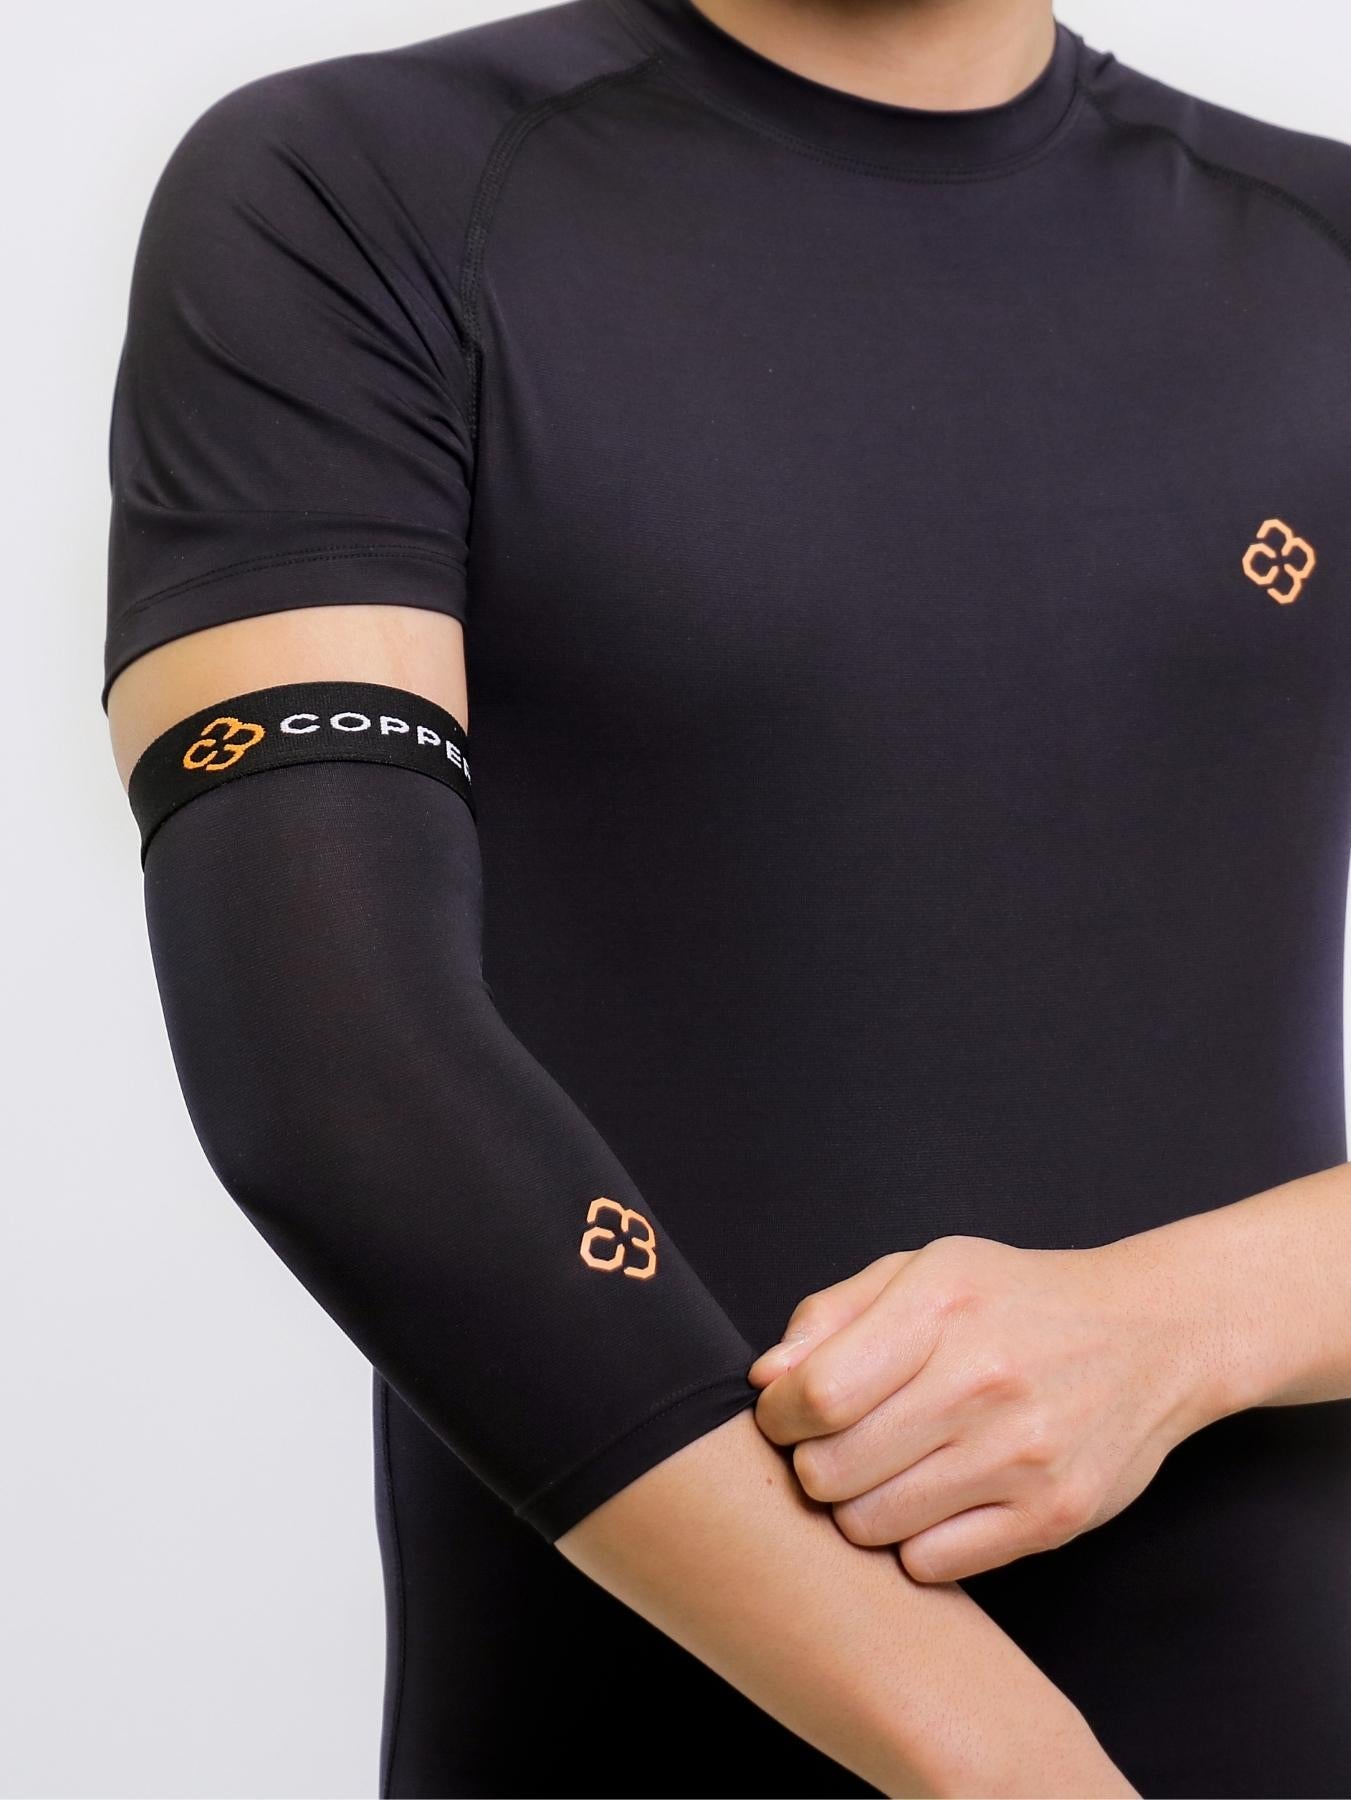 Copper Compression Short Sleeve Shirt - Mens – Copper 88